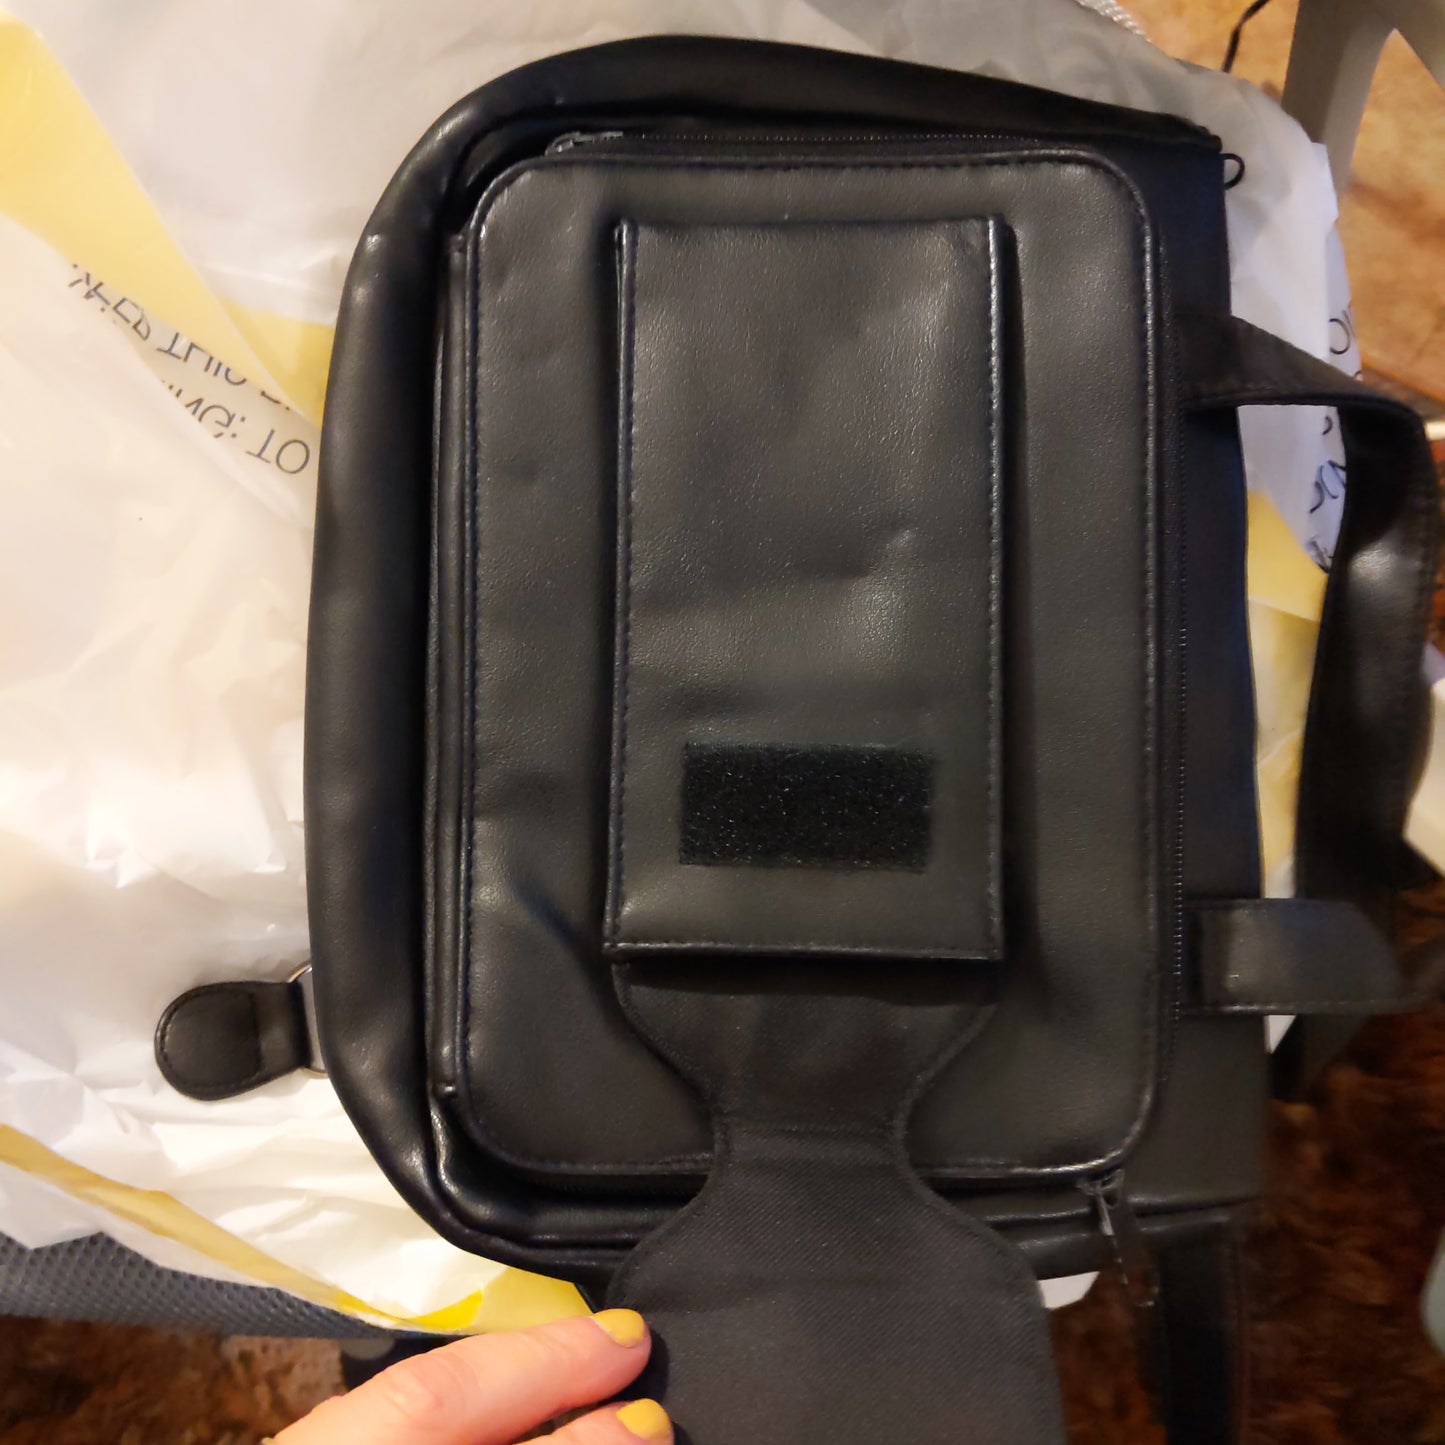 Black Shoulder Bag with lits of storage